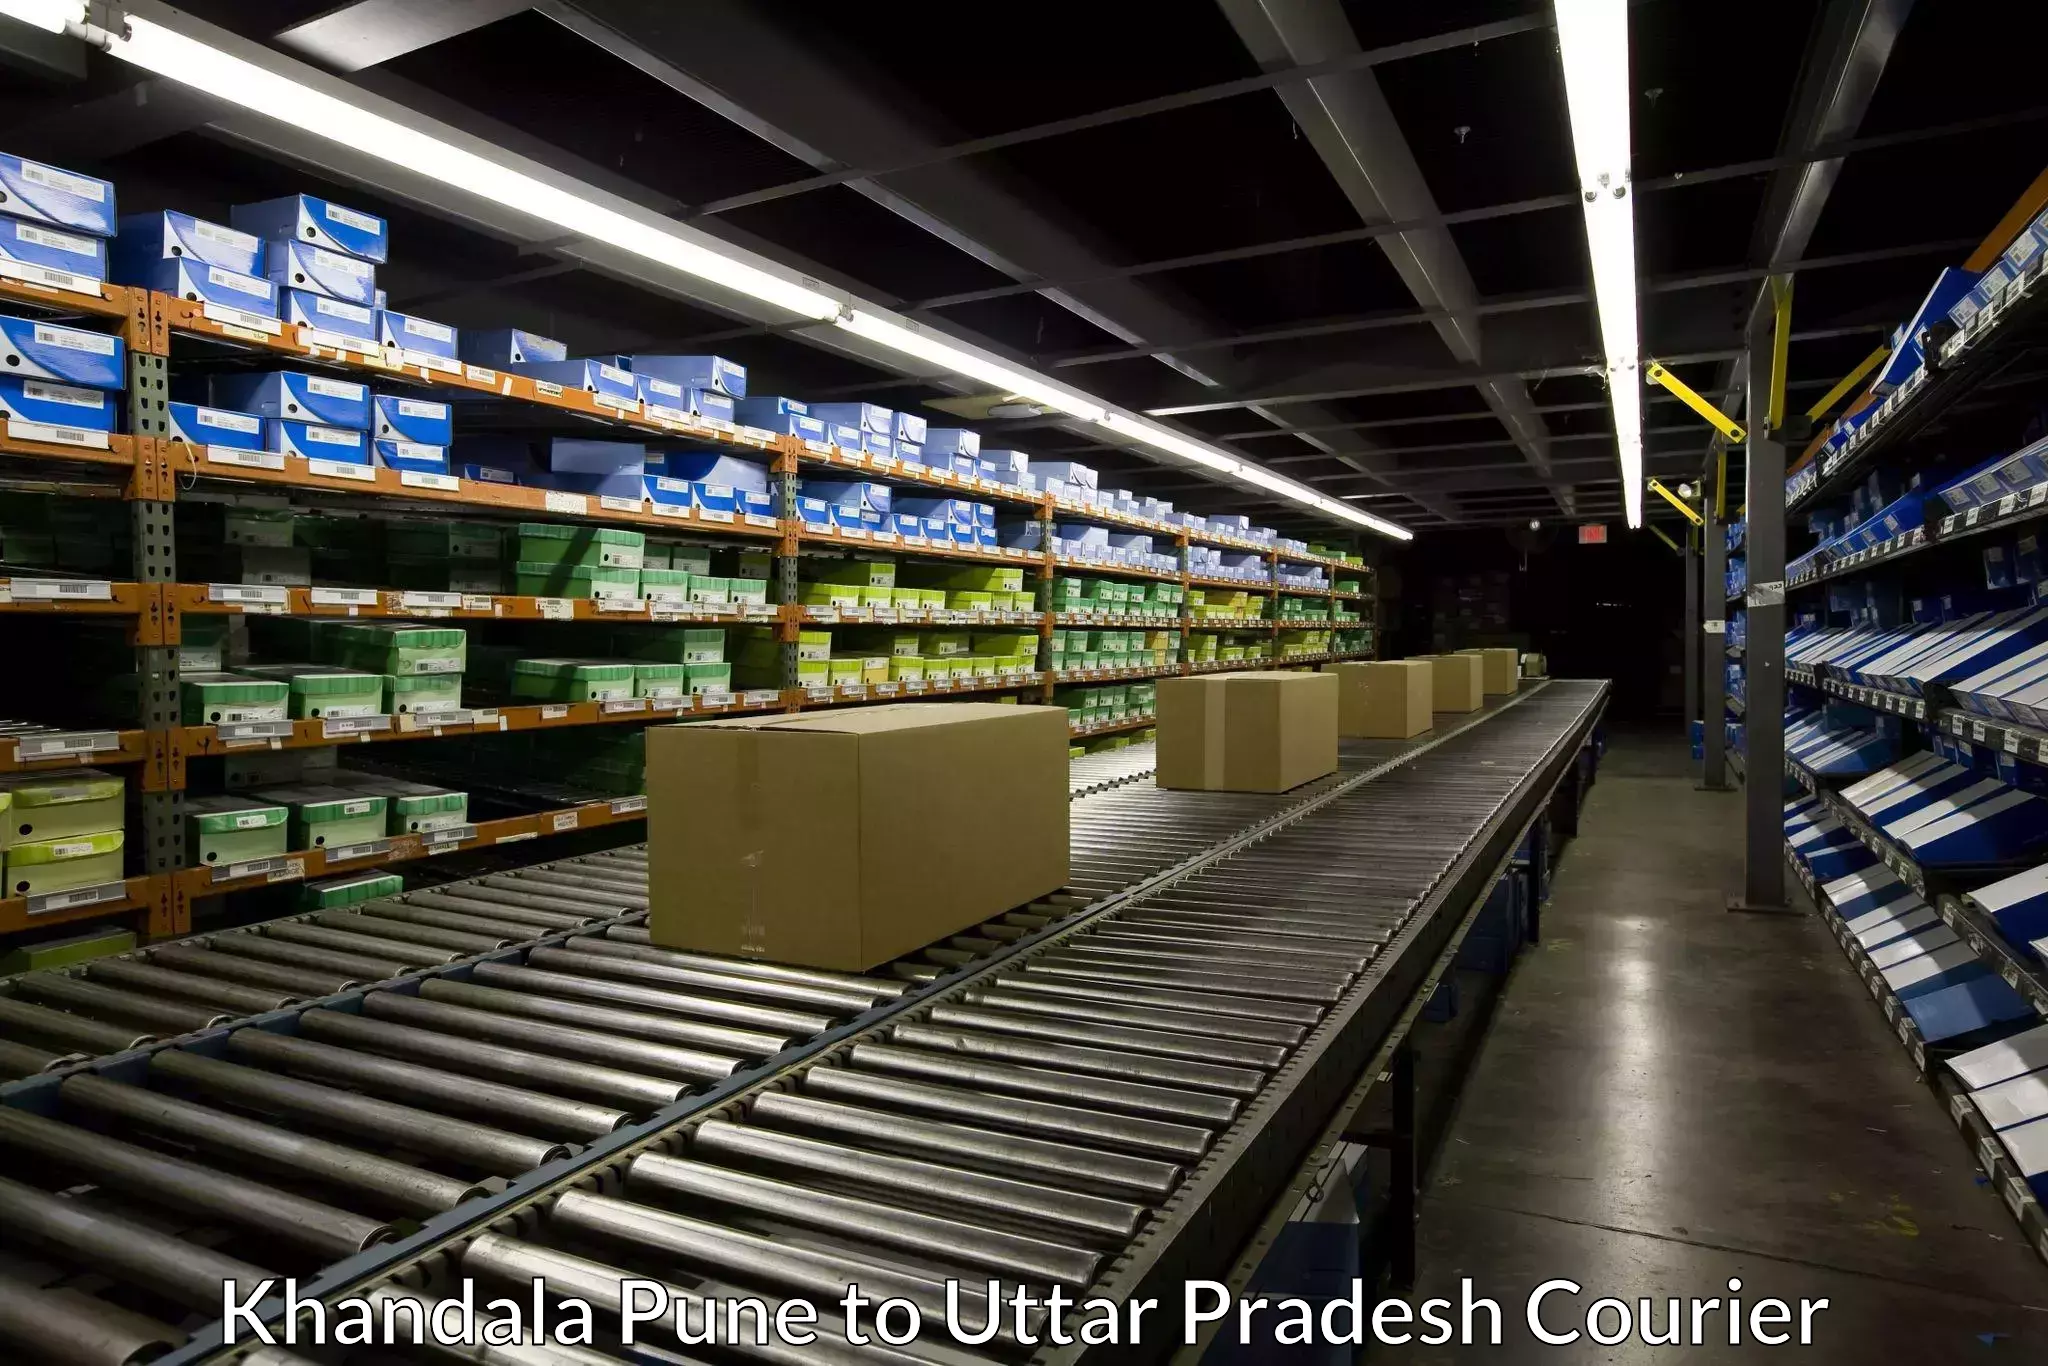 Global courier networks Khandala Pune to Uttar Pradesh